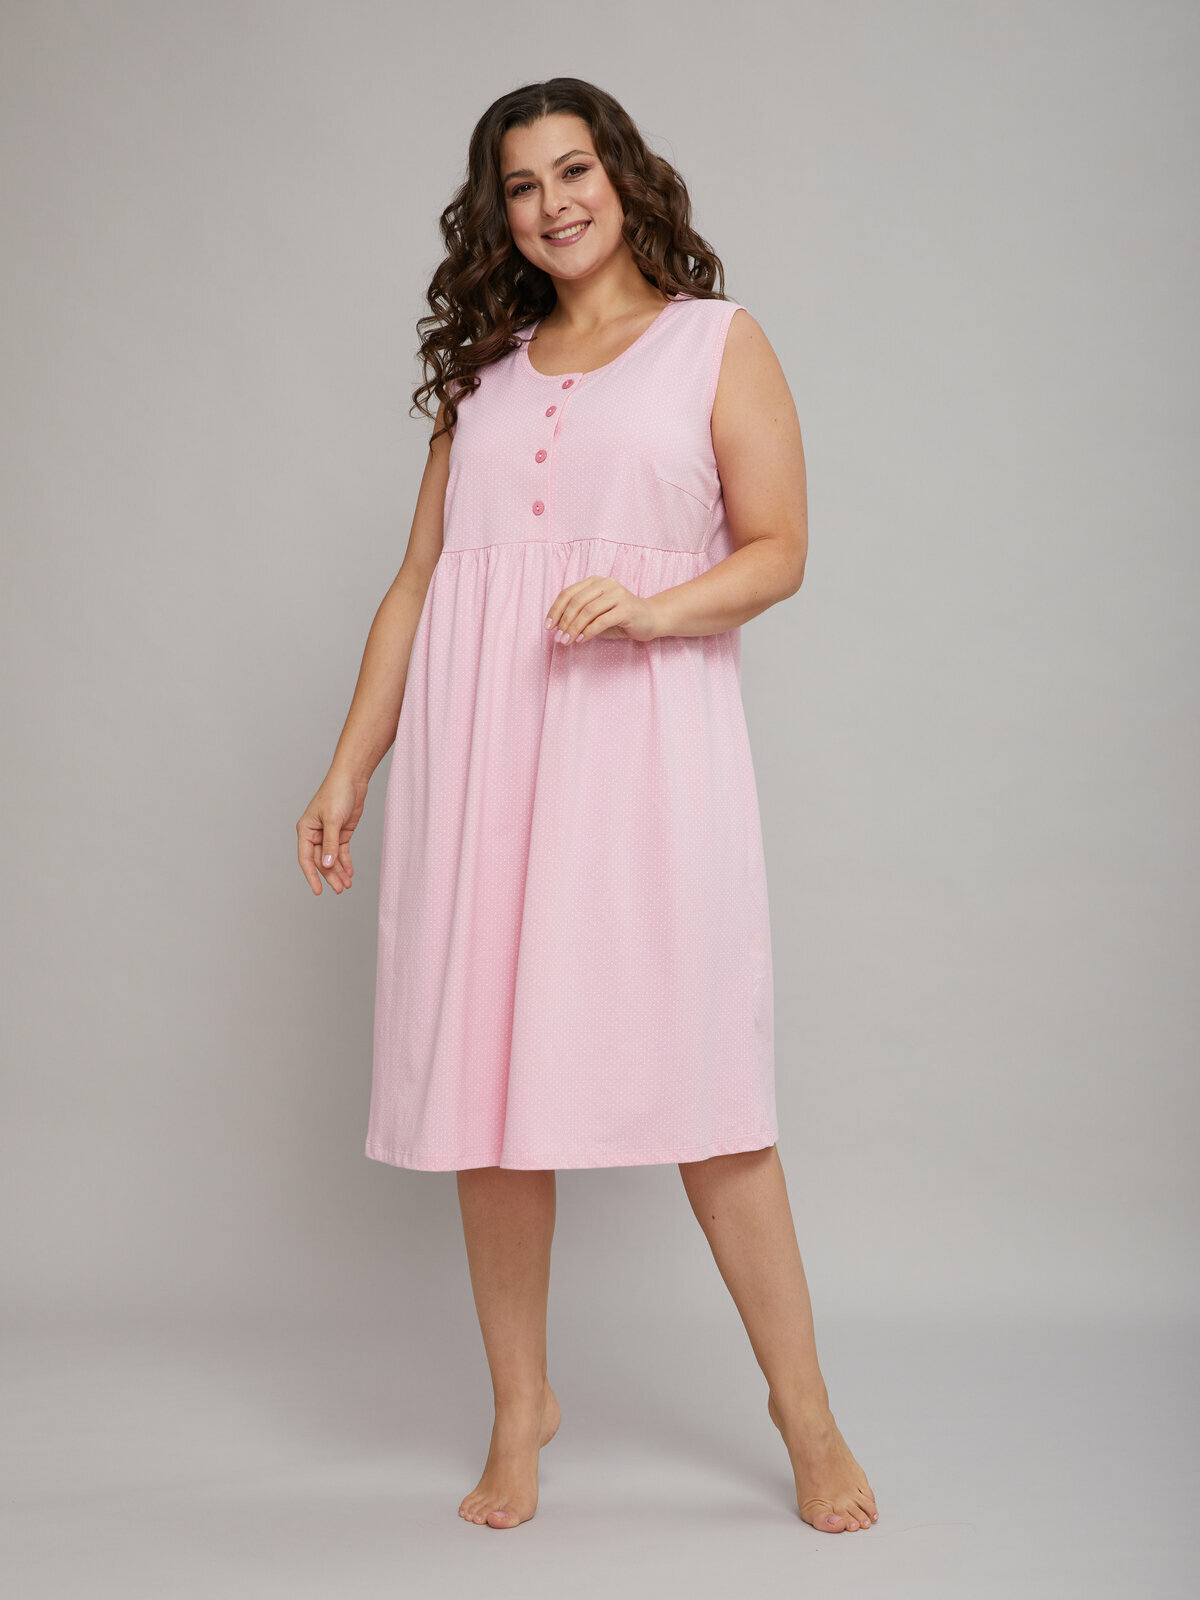 Сорочка ночная женская Алтекс без рукавов розовая в горошек, размер 50 - фотография № 2